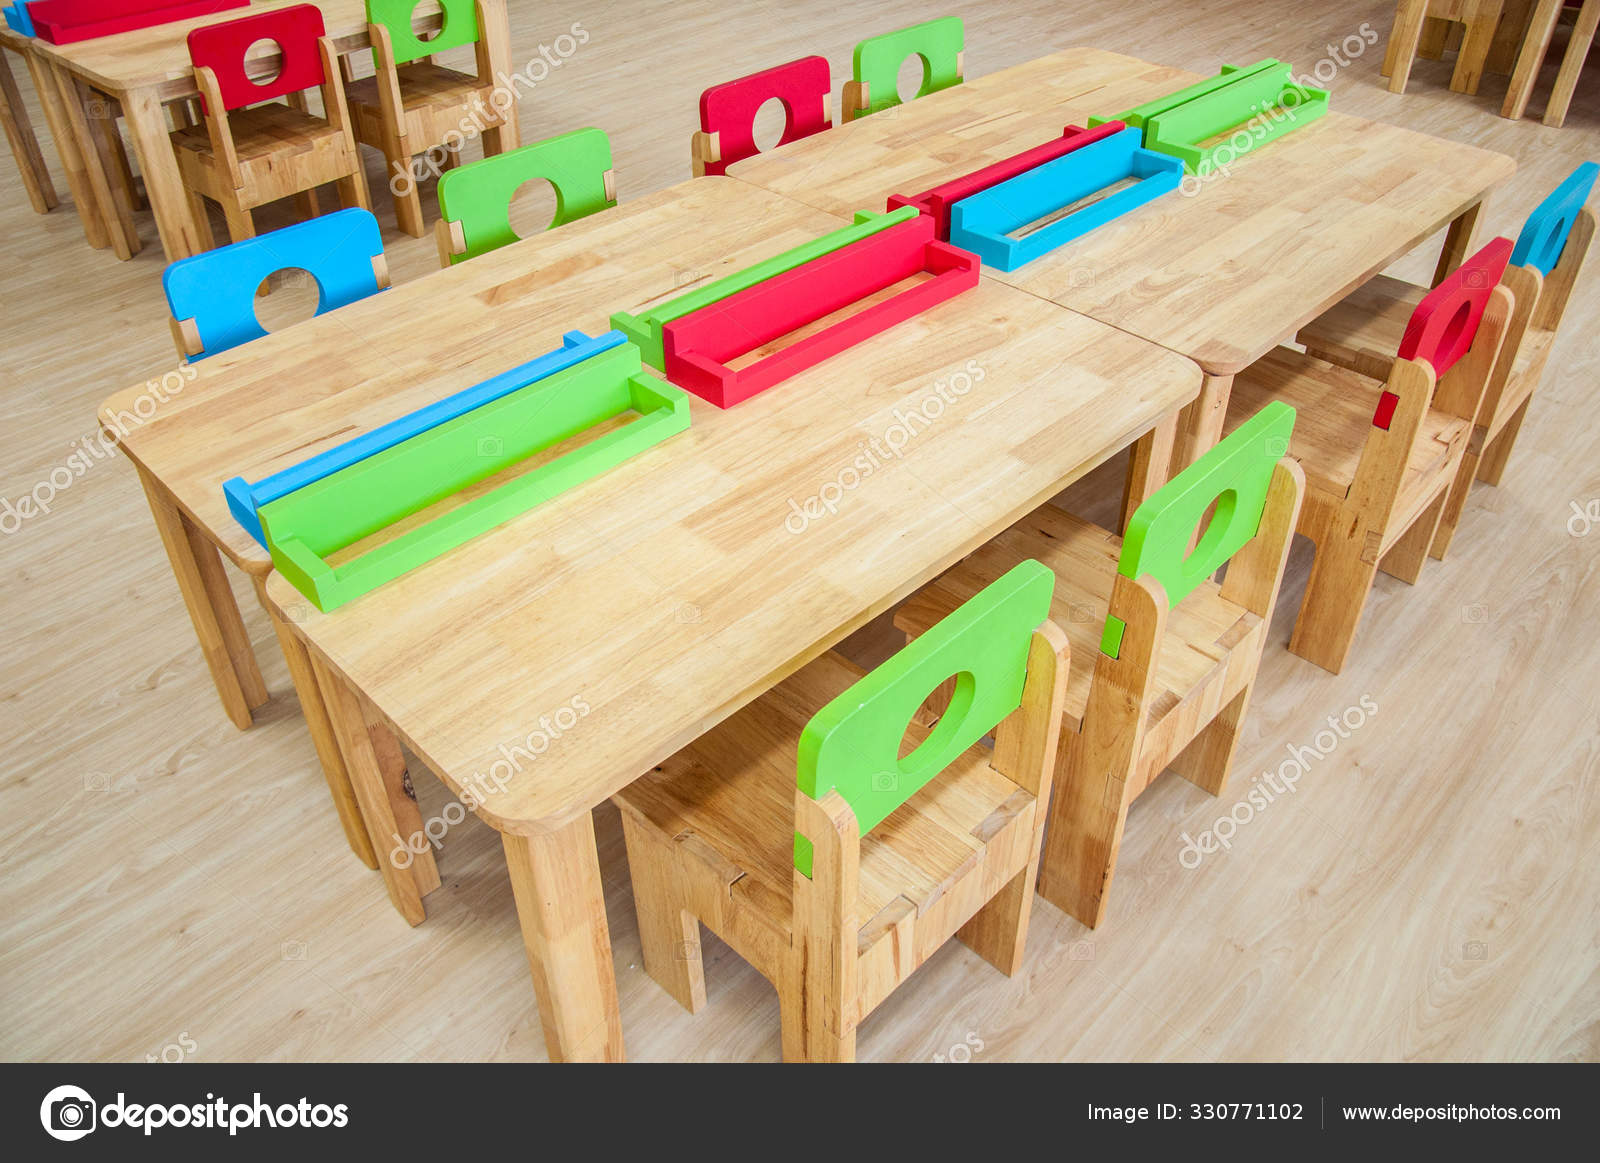 kindergarten desks